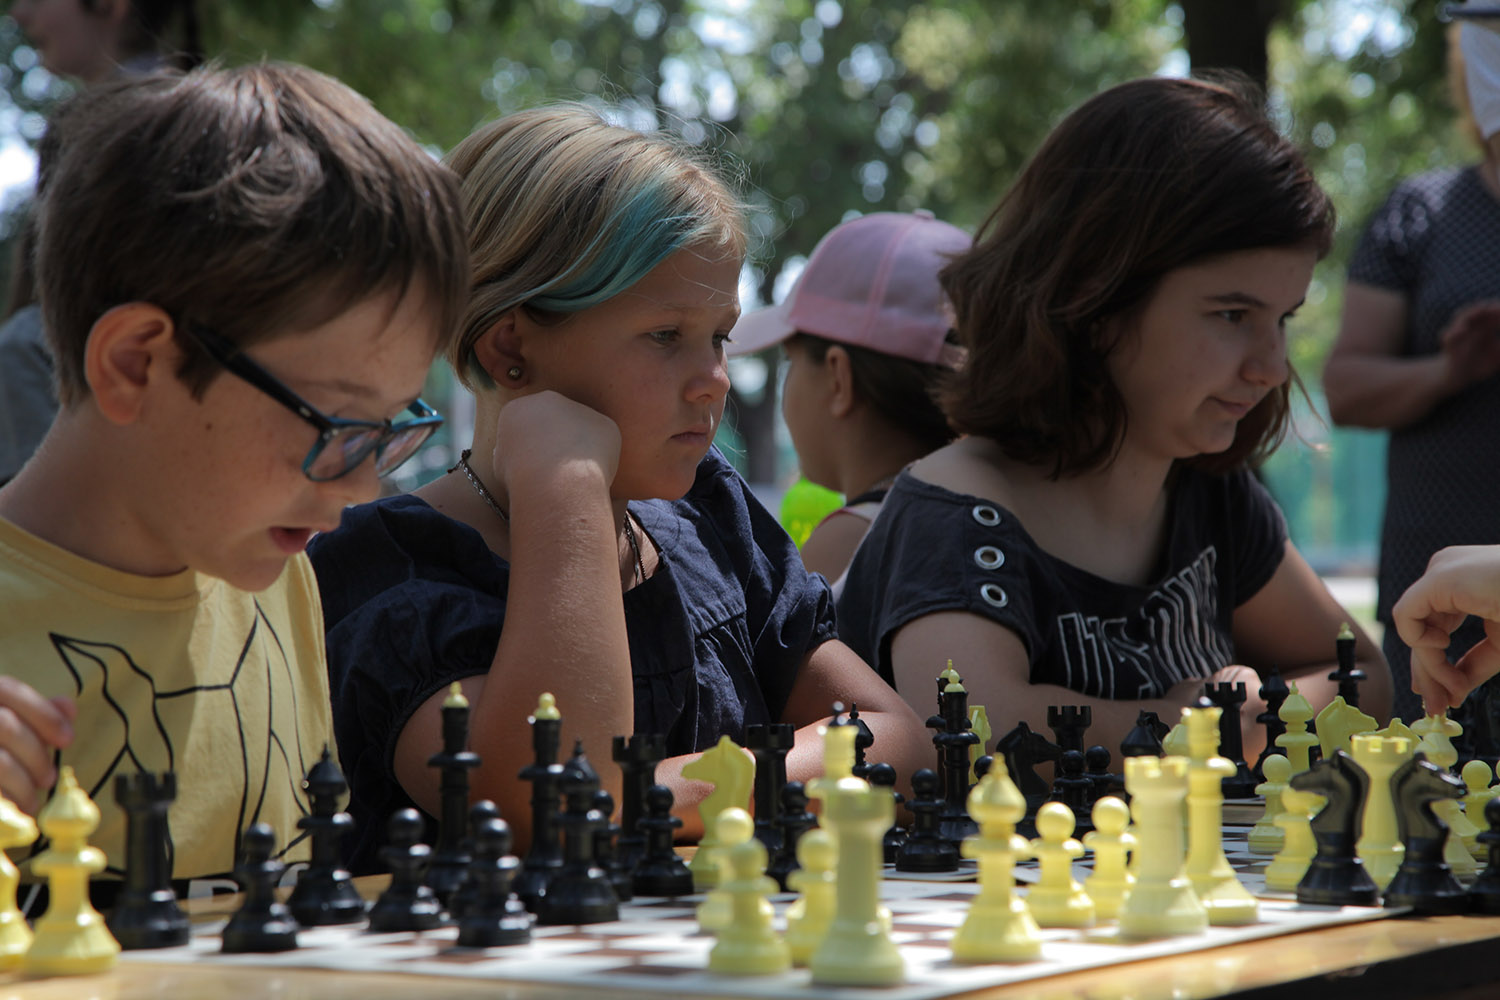 турнир по шахматам